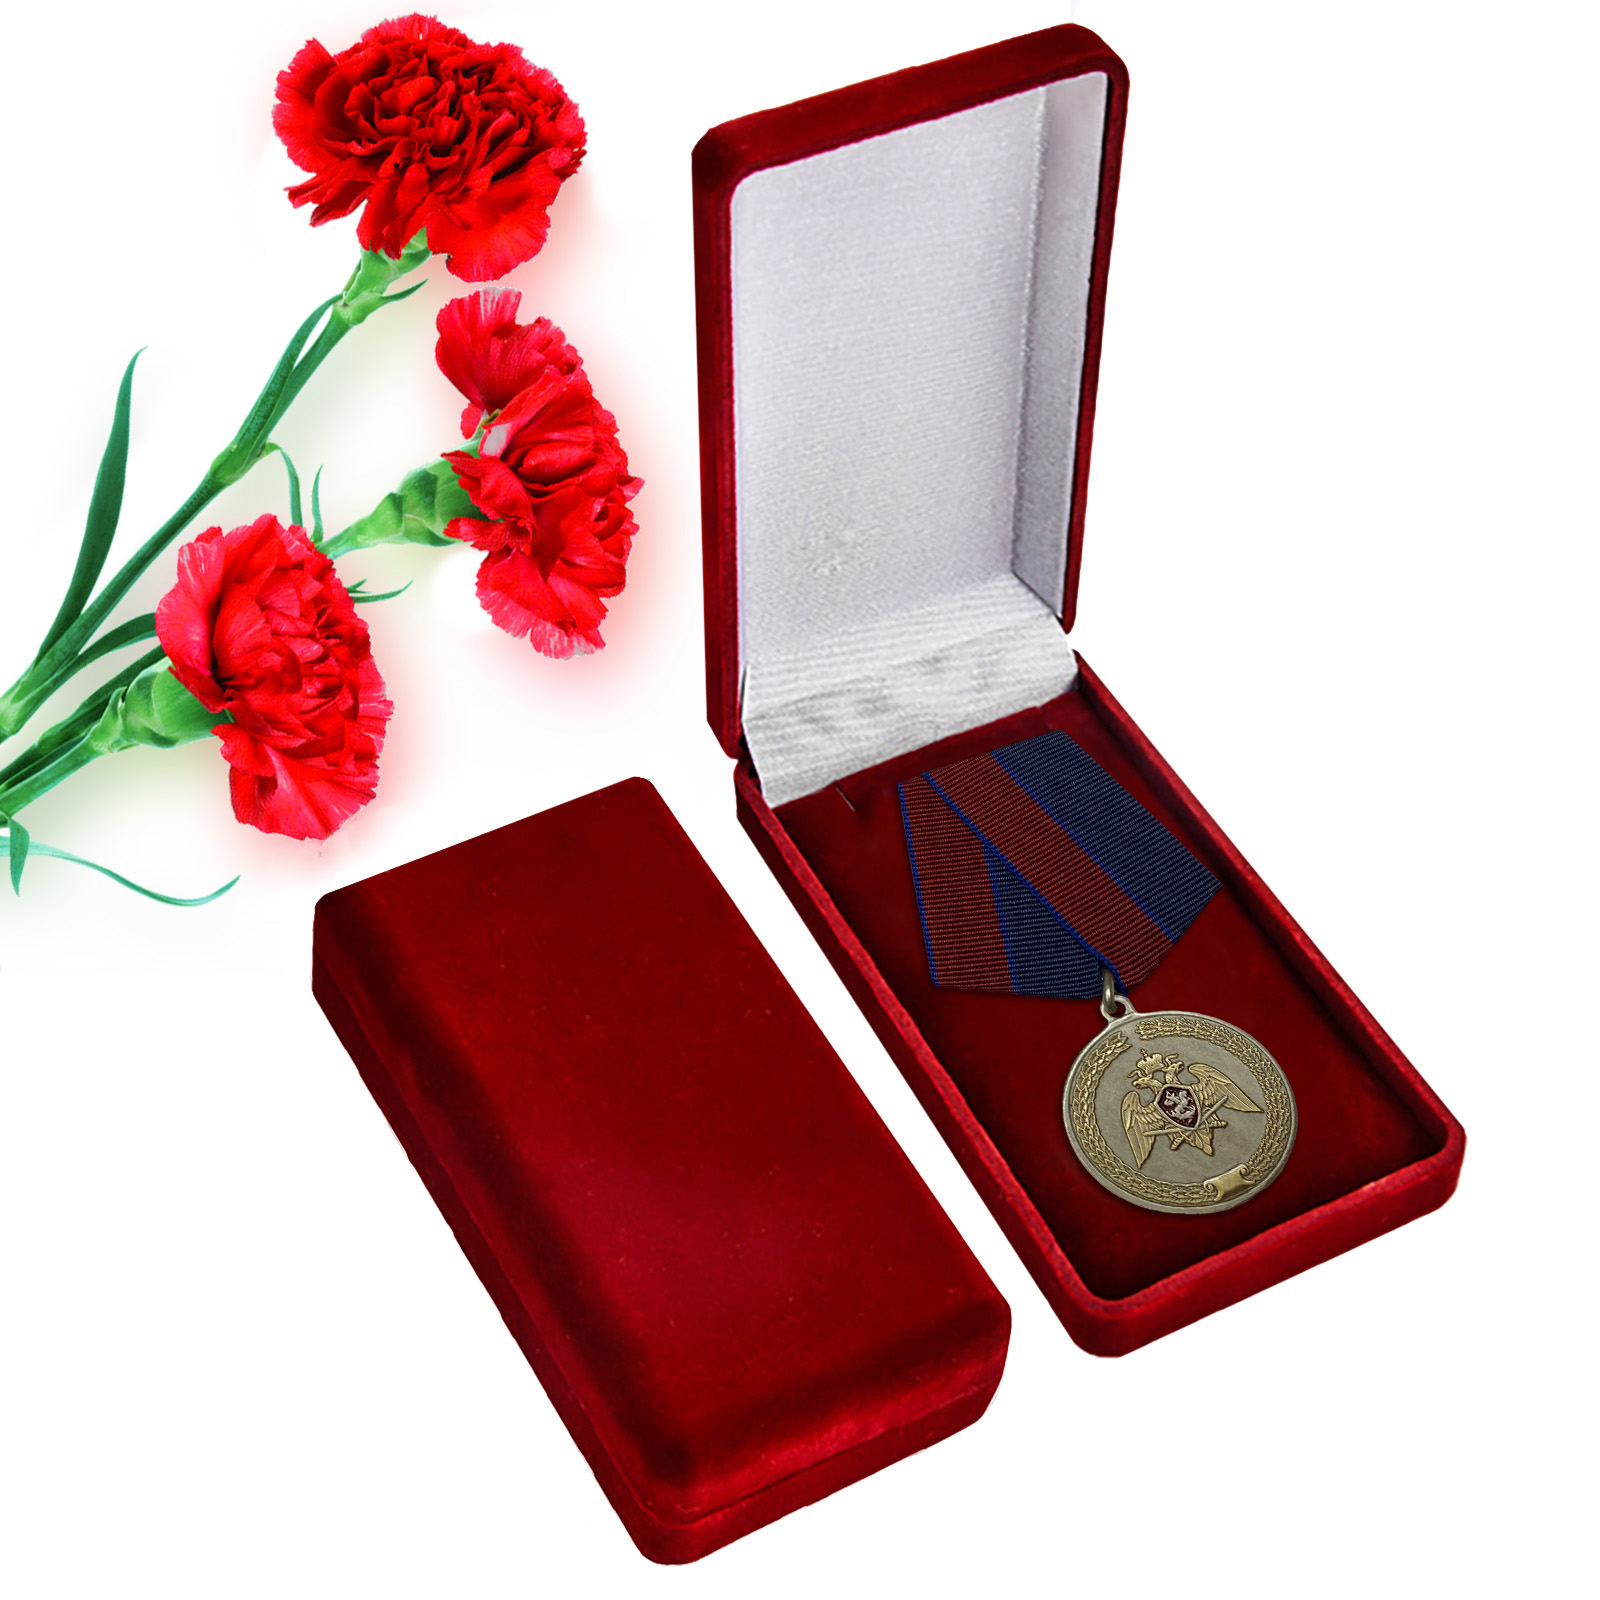 Медаль "За заслуги в укреплении правопорядка" Росгвардии